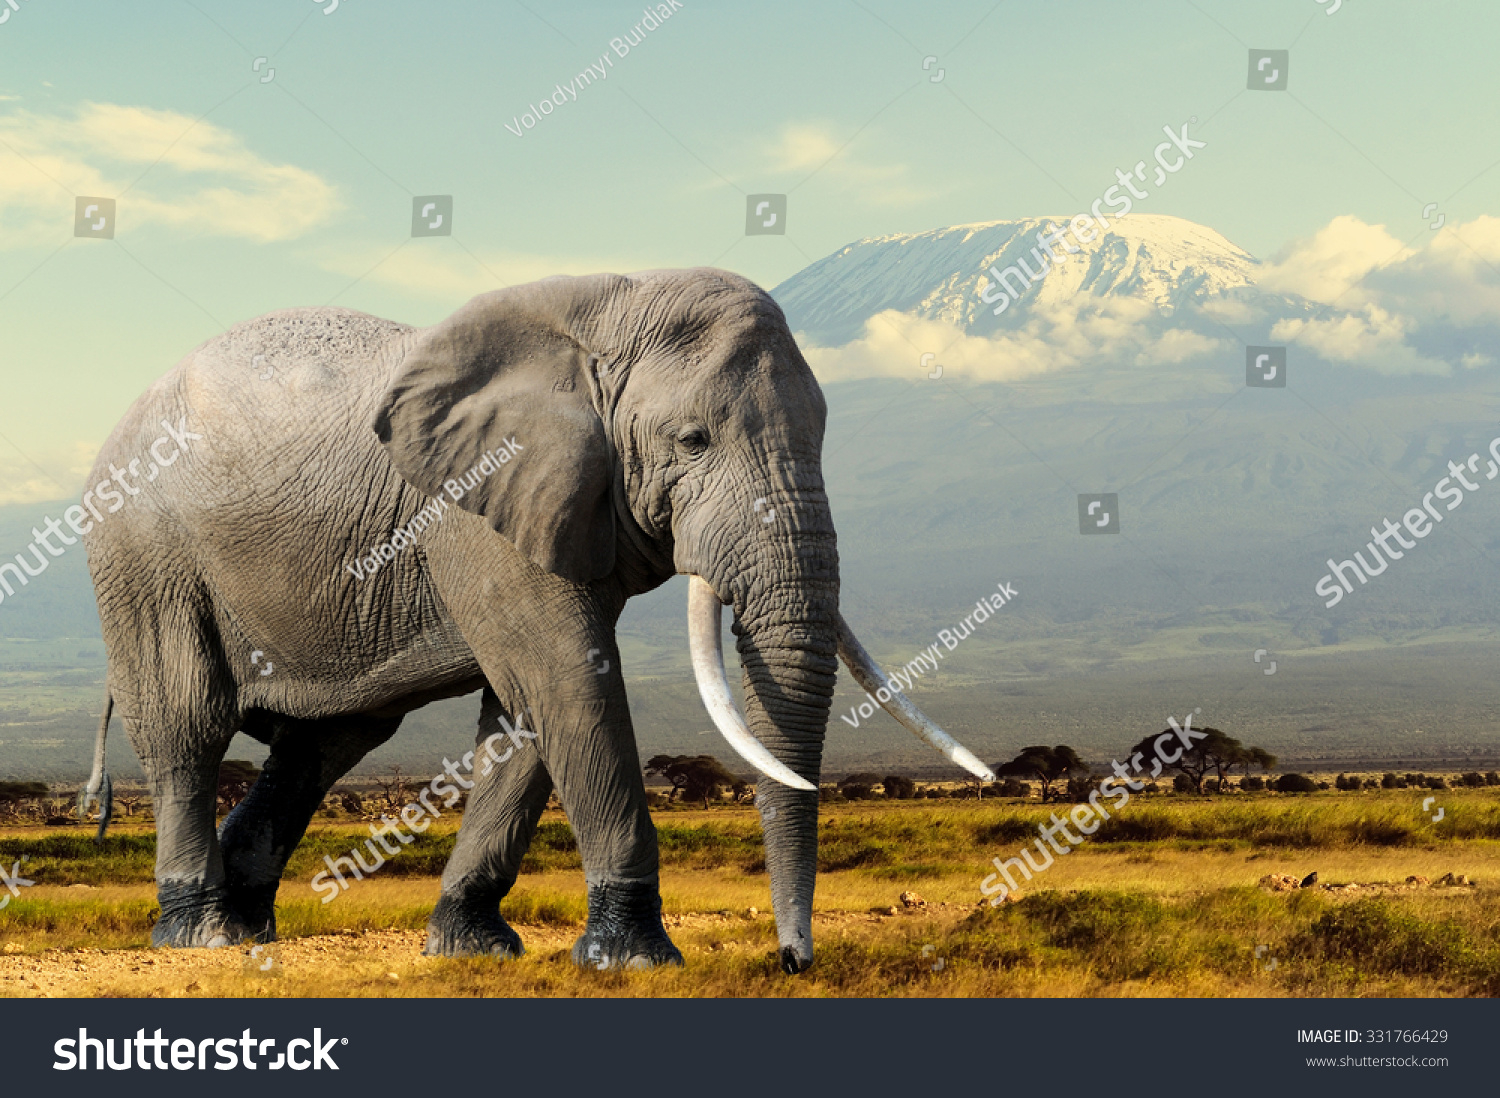 Elephant on Kilimajaro mount background in National park of Kenya, Africa #331766429